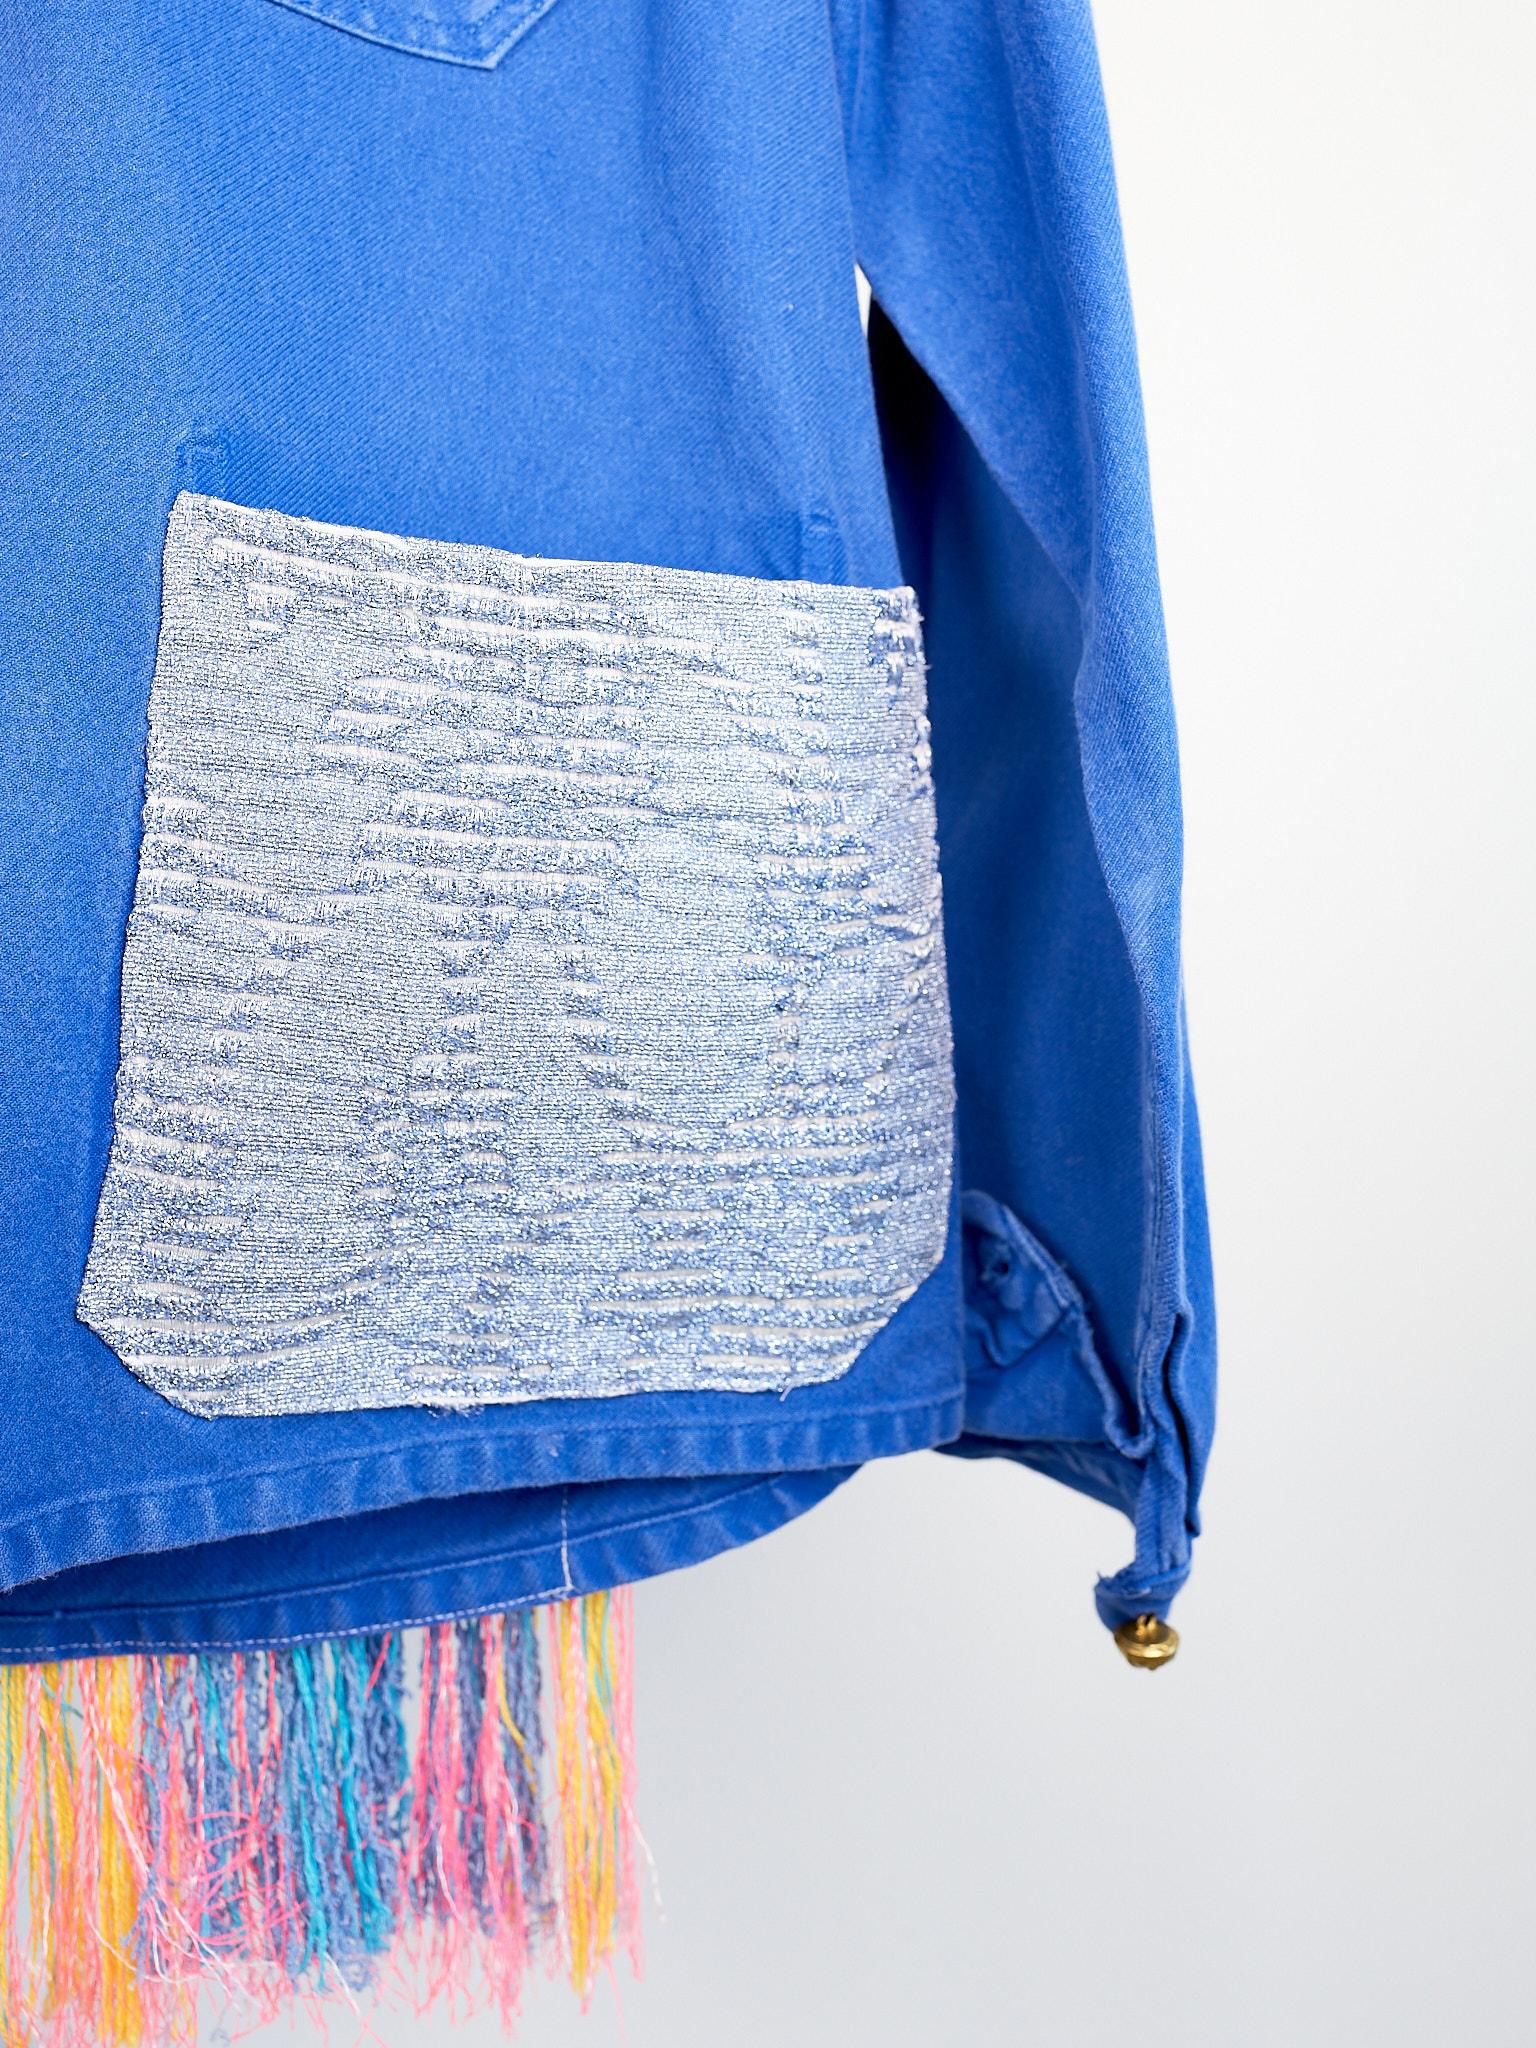 Cobalt Blue Jacket  Back Multi Color Pattern Fringes Glitter Pockets French Work 1